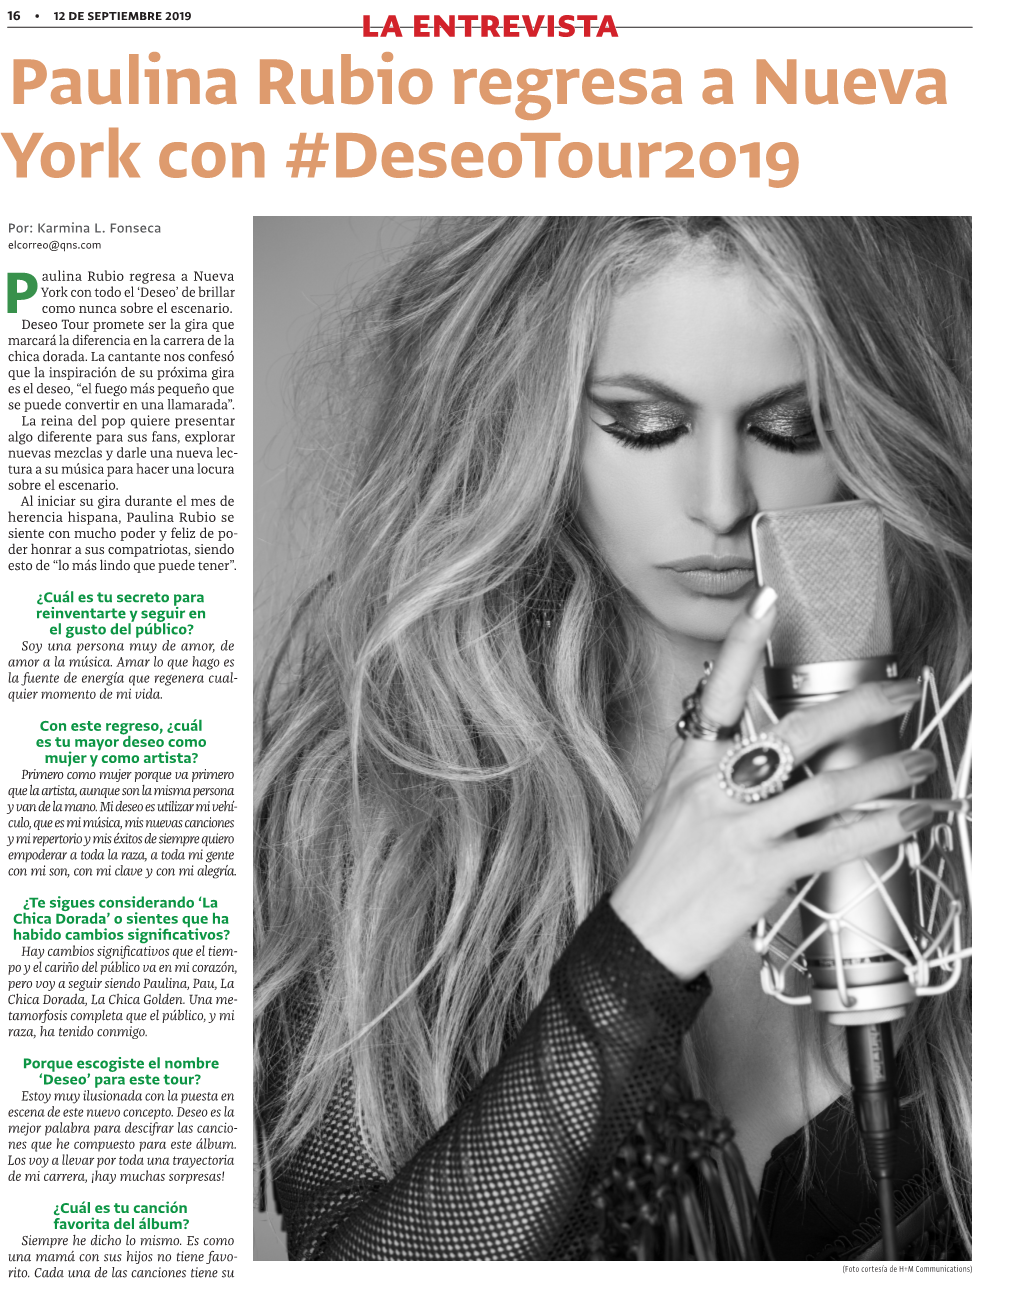 Paulina Rubio Regresa a Nueva York Con #Deseotour2019